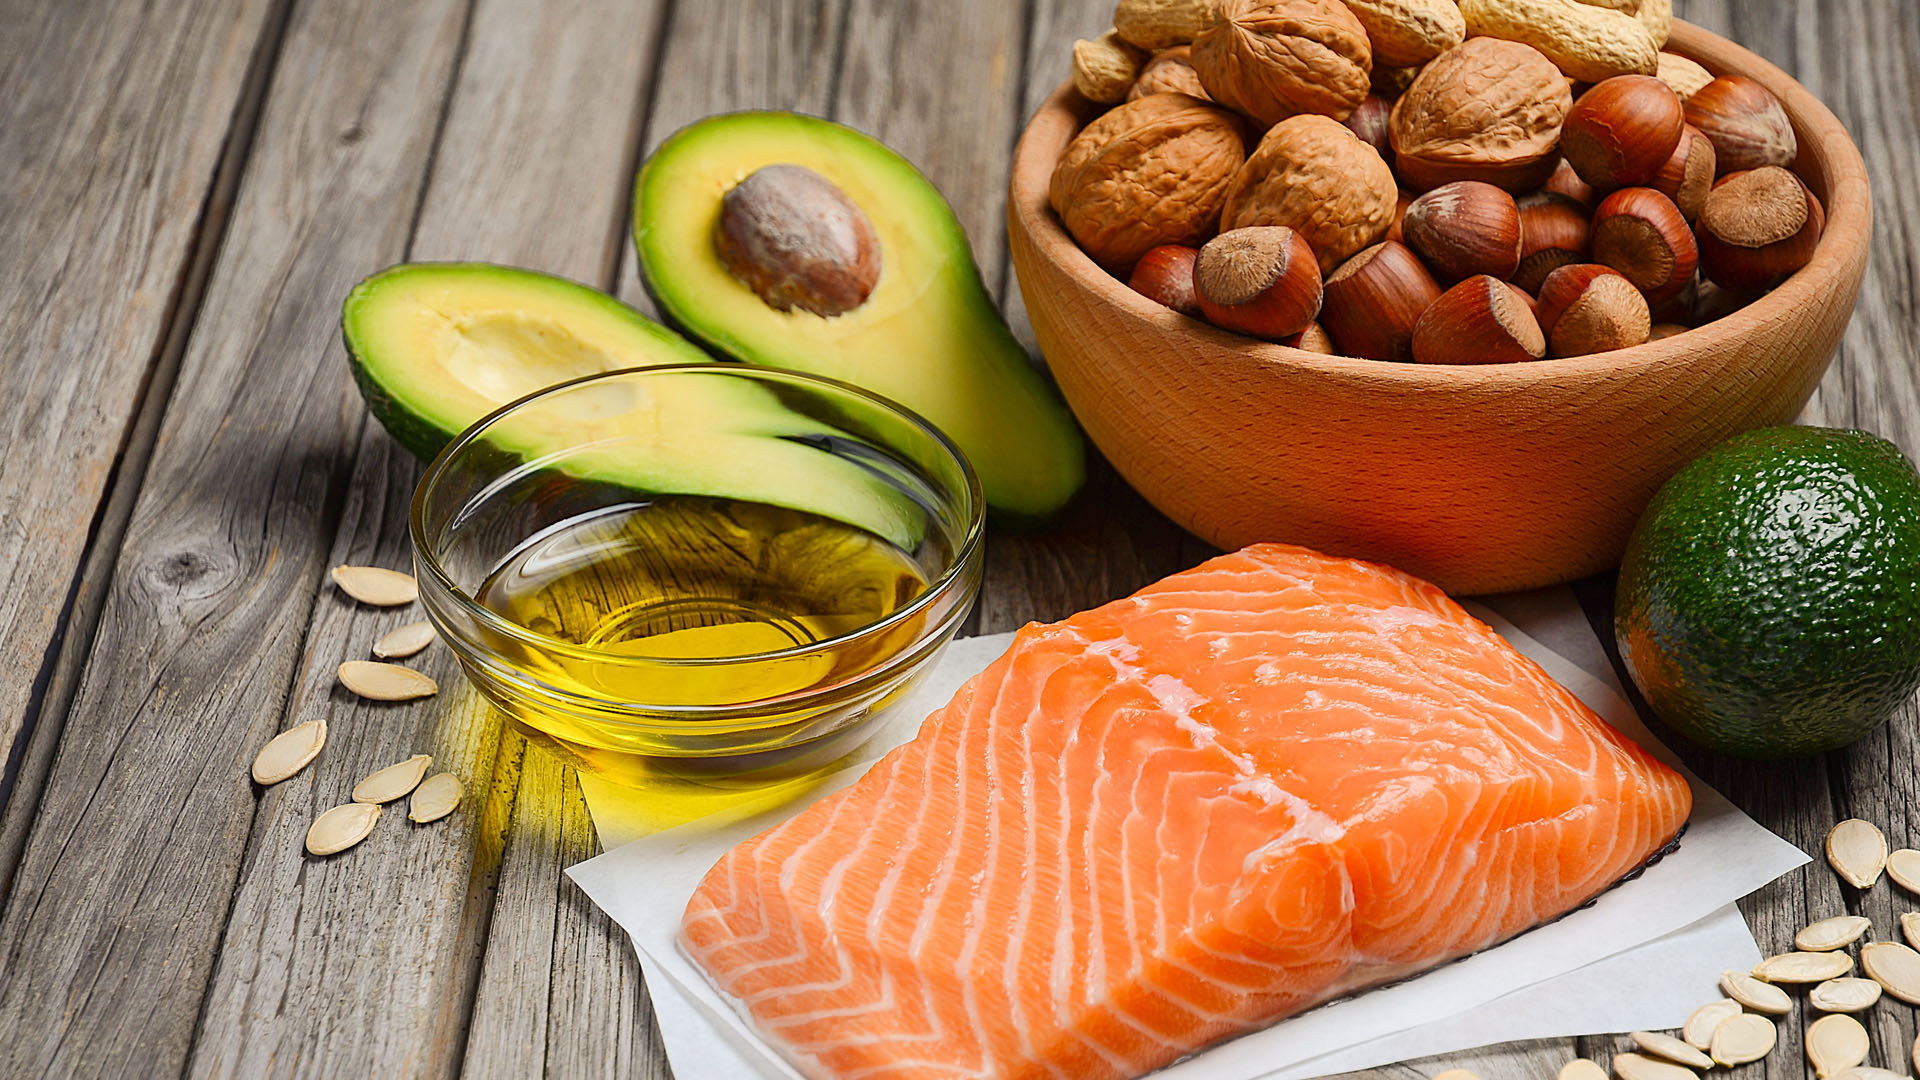 Plusieurs sources de bons gras, comme du saumon, des noix, des graines, des avocats et de l’huile d’olive.